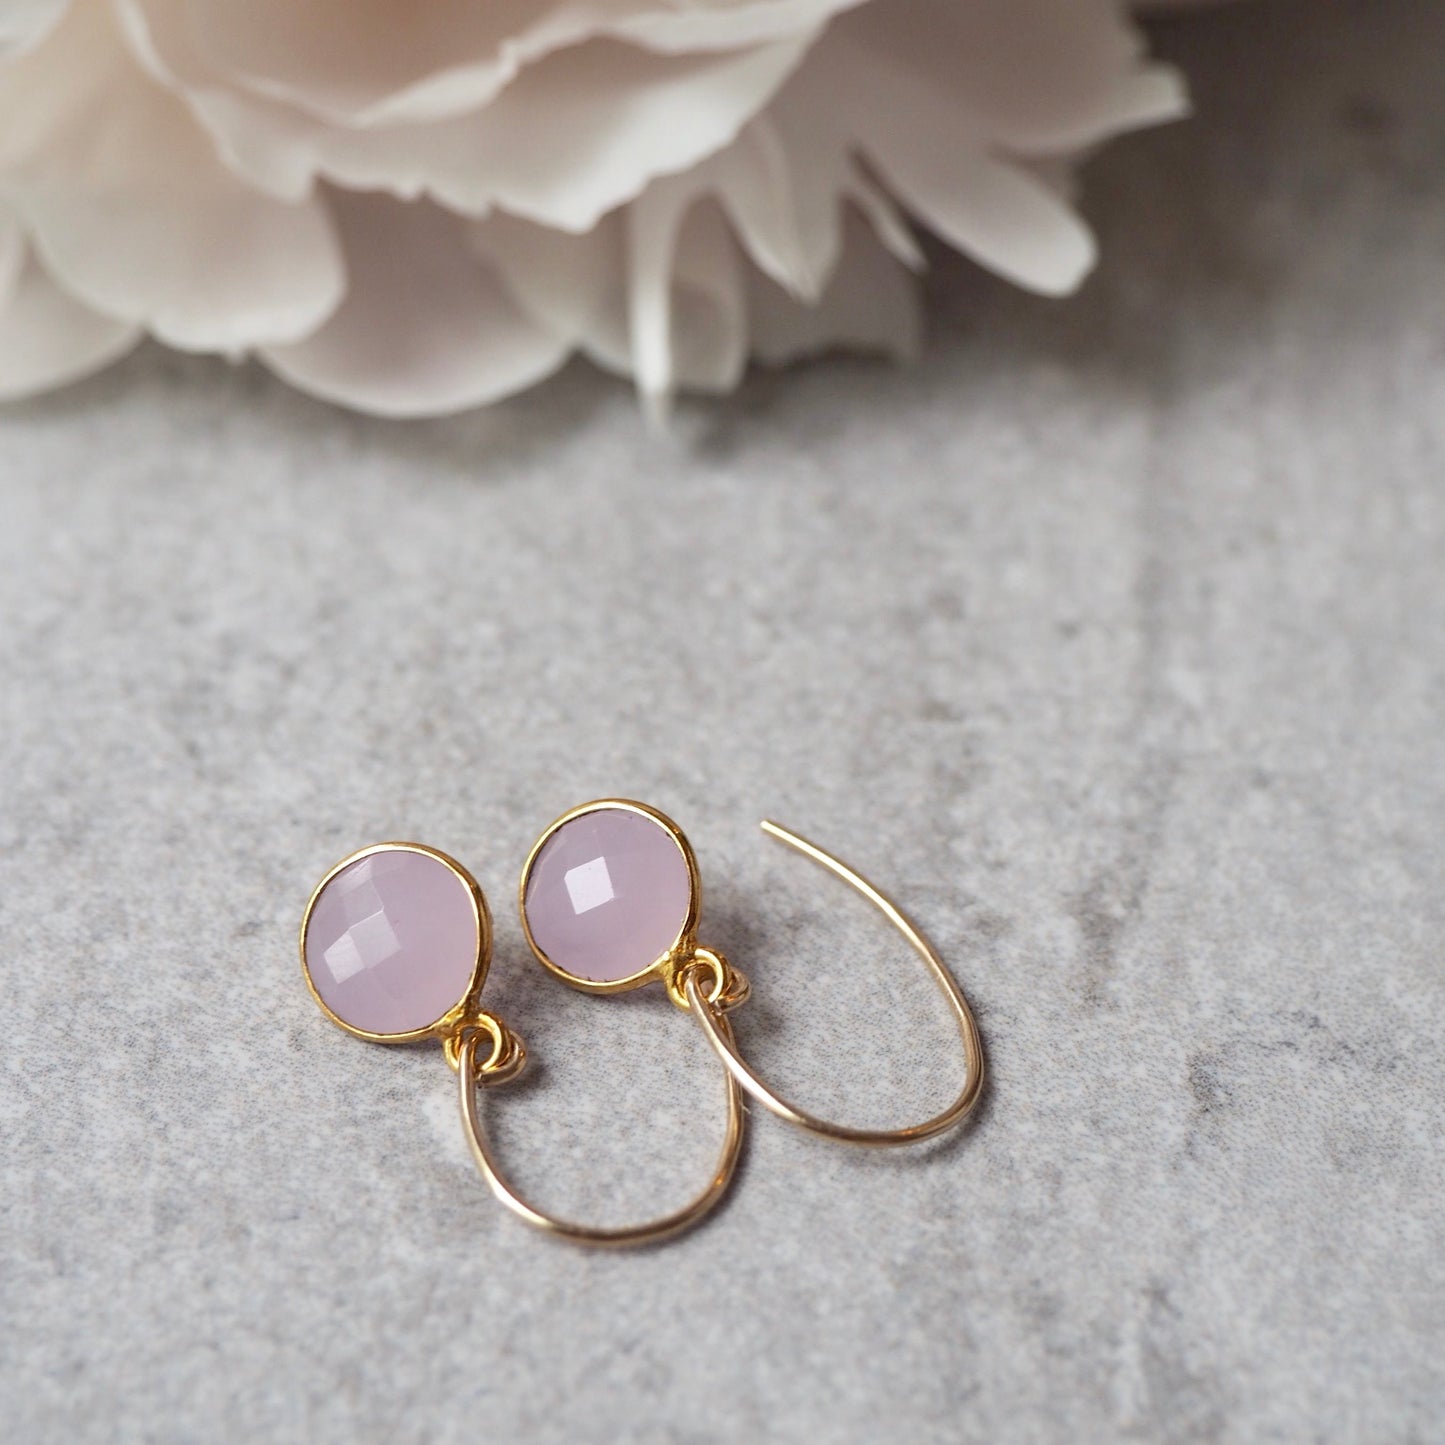 Pink Gemstone Earrings by Nancy Wallis of Wallis Designs